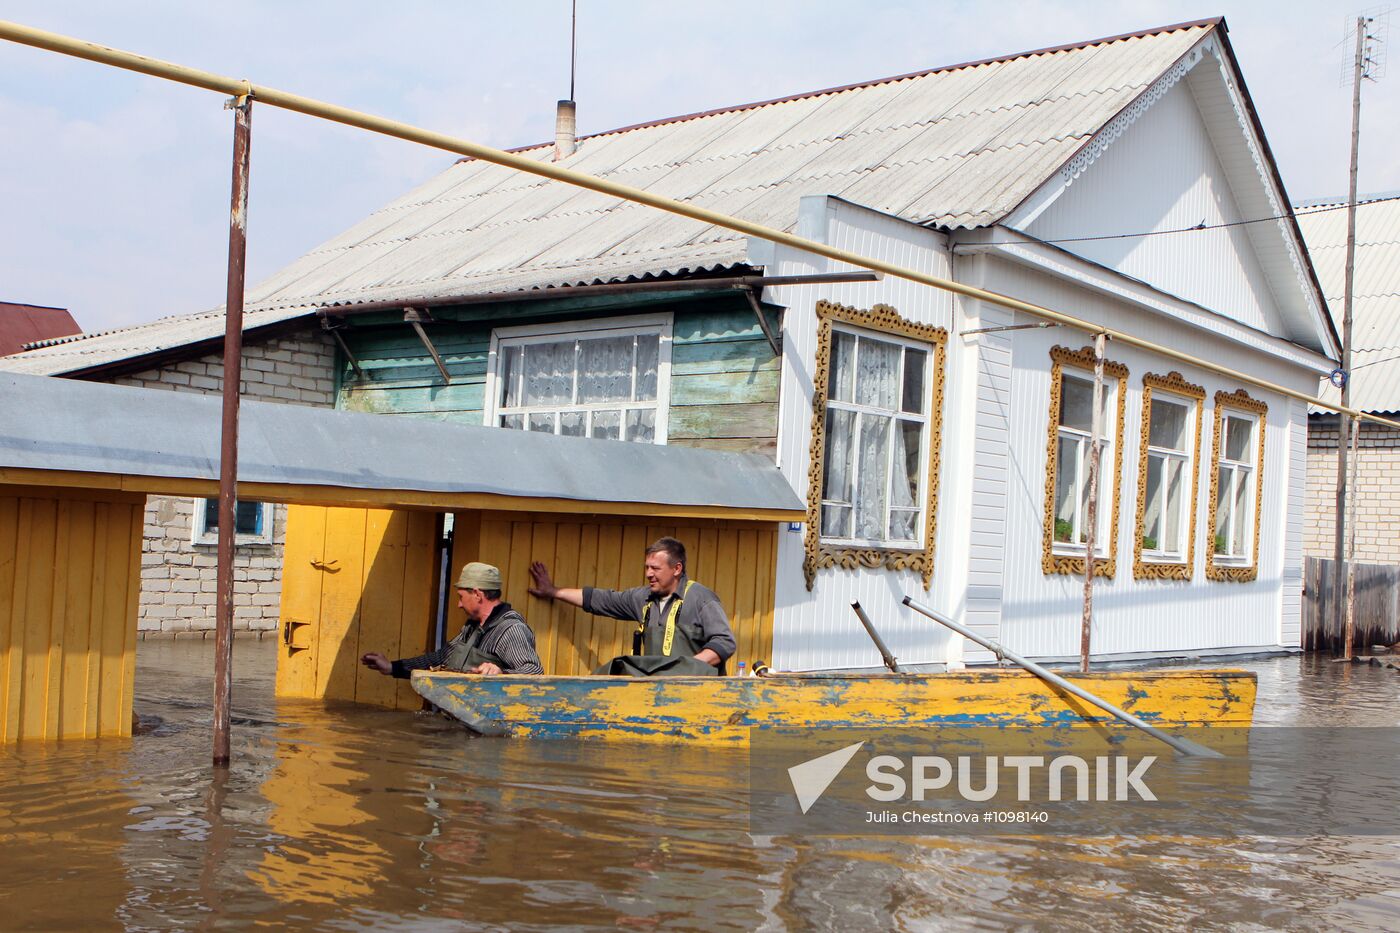 Flooding in Krasnoslobodsk, Mordovia